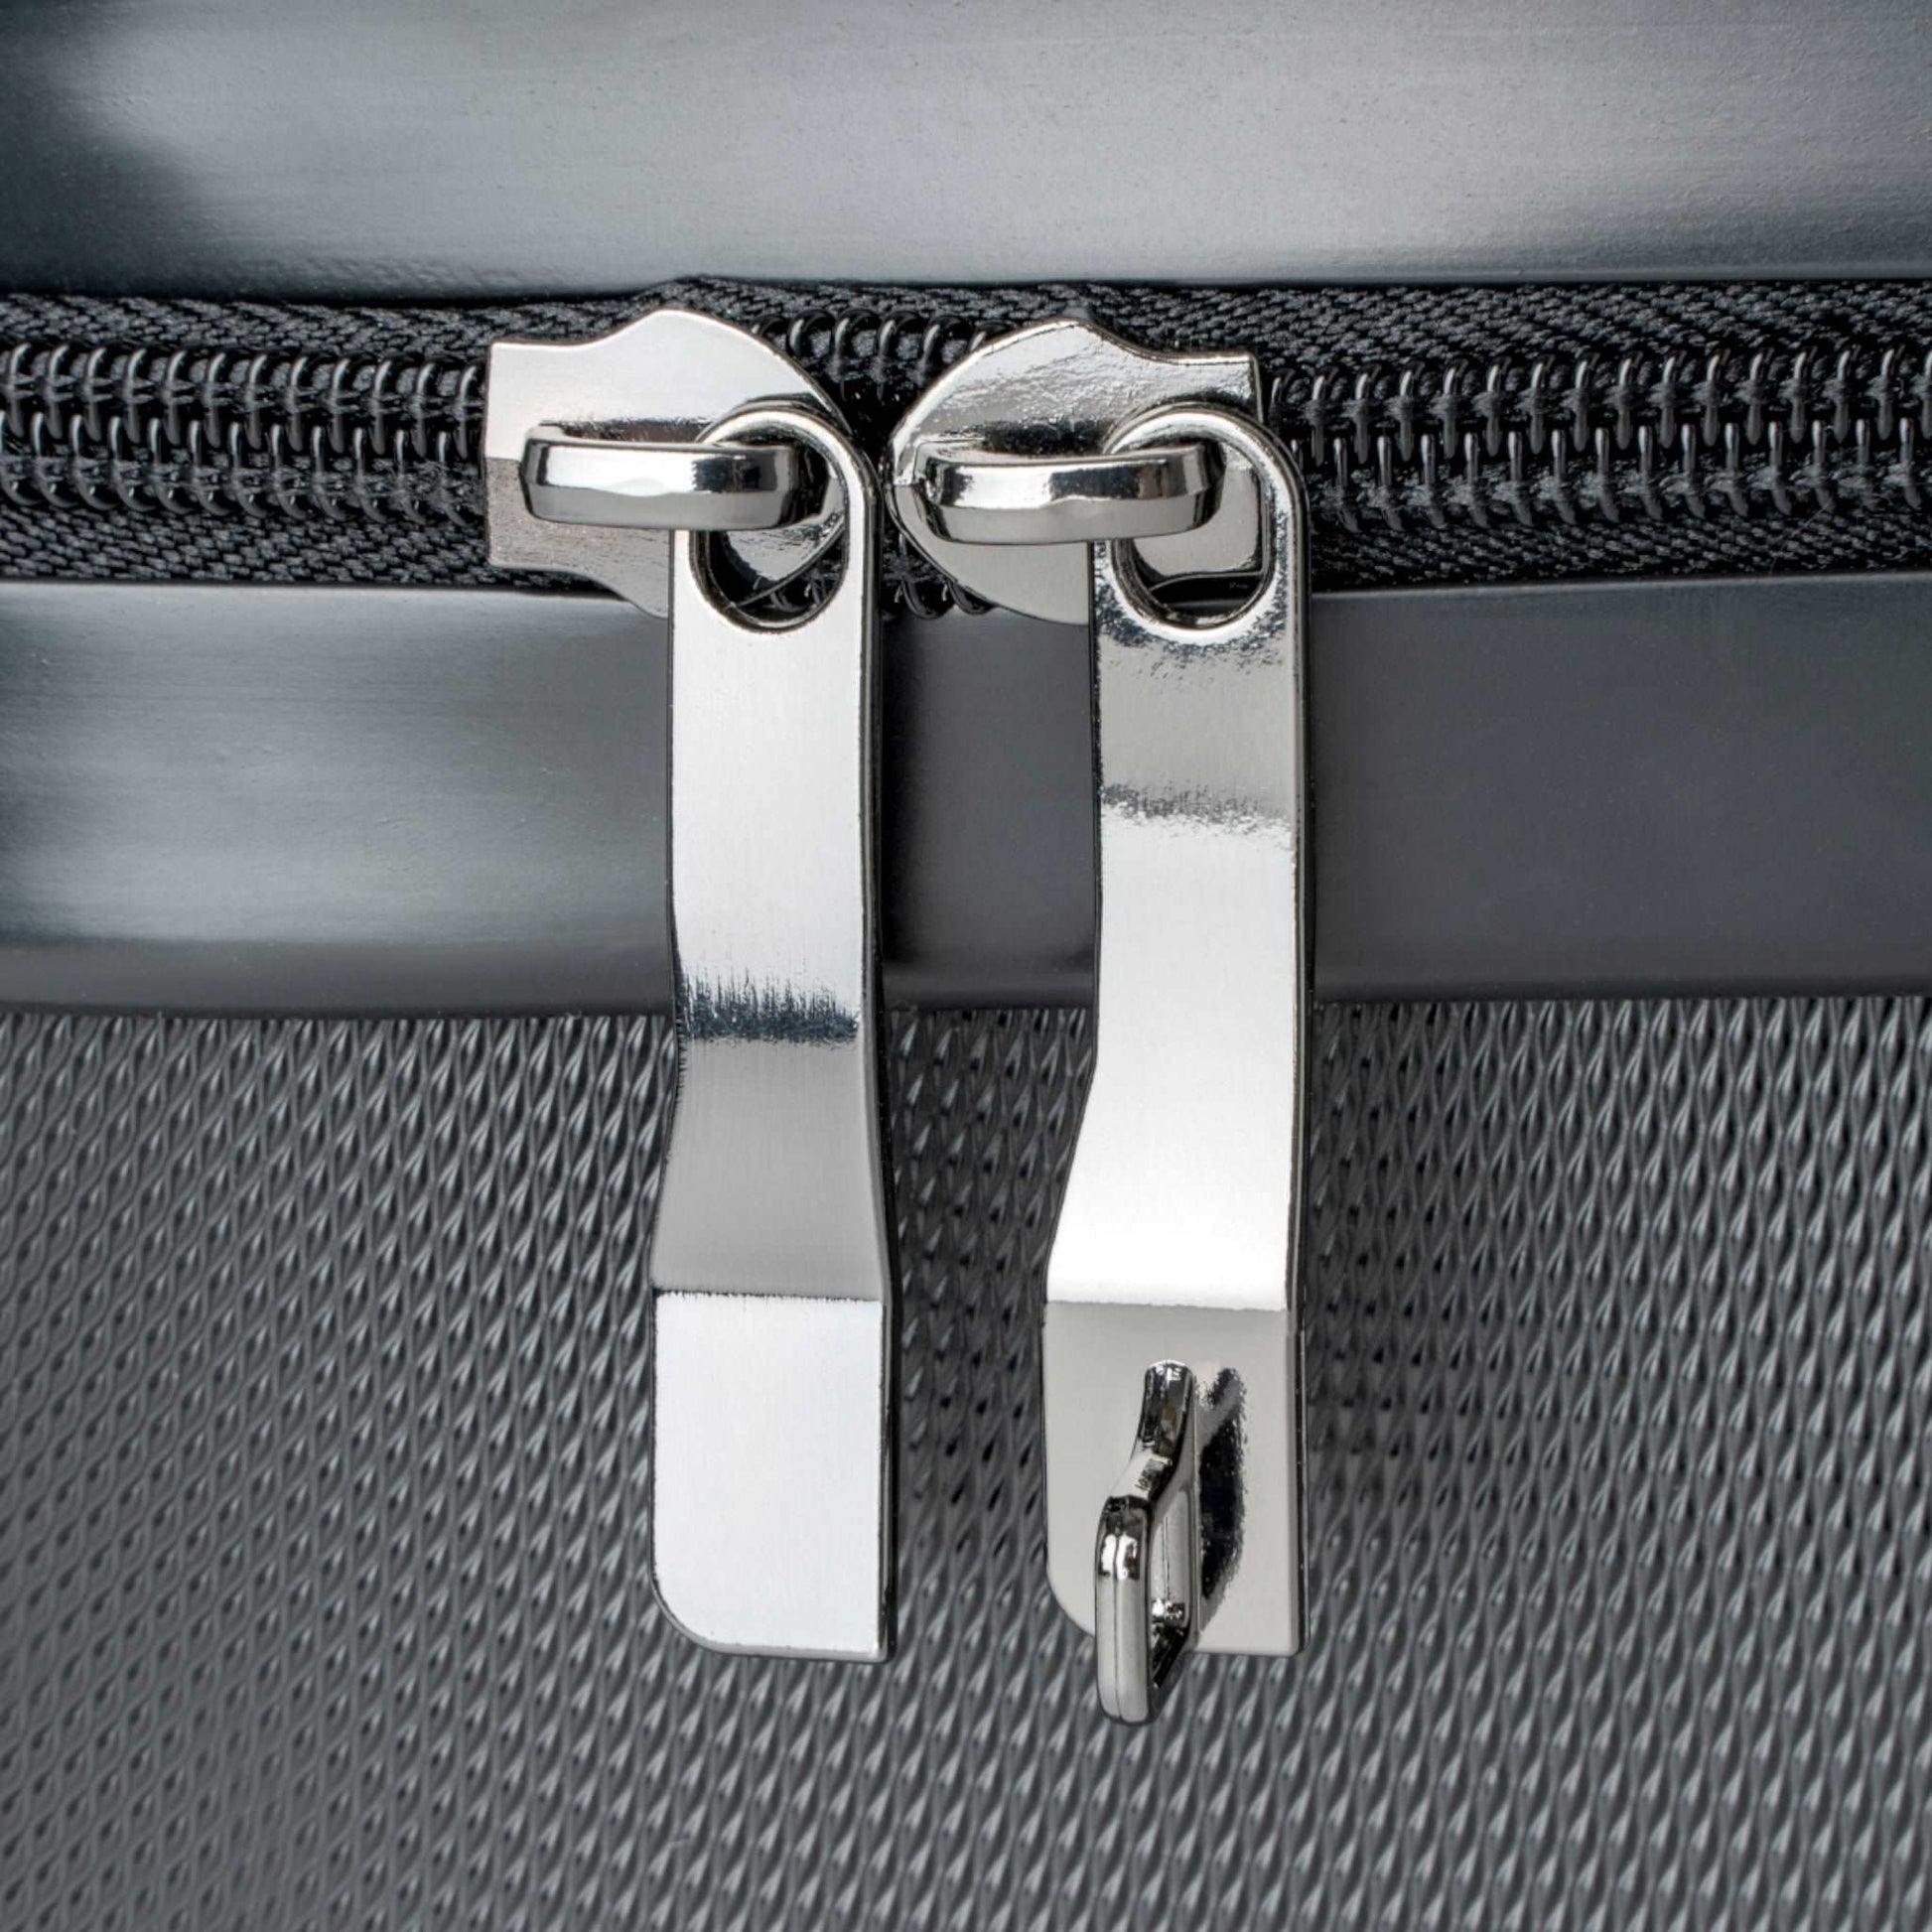 SSF Suitcase in Platinum (3 Sizes)